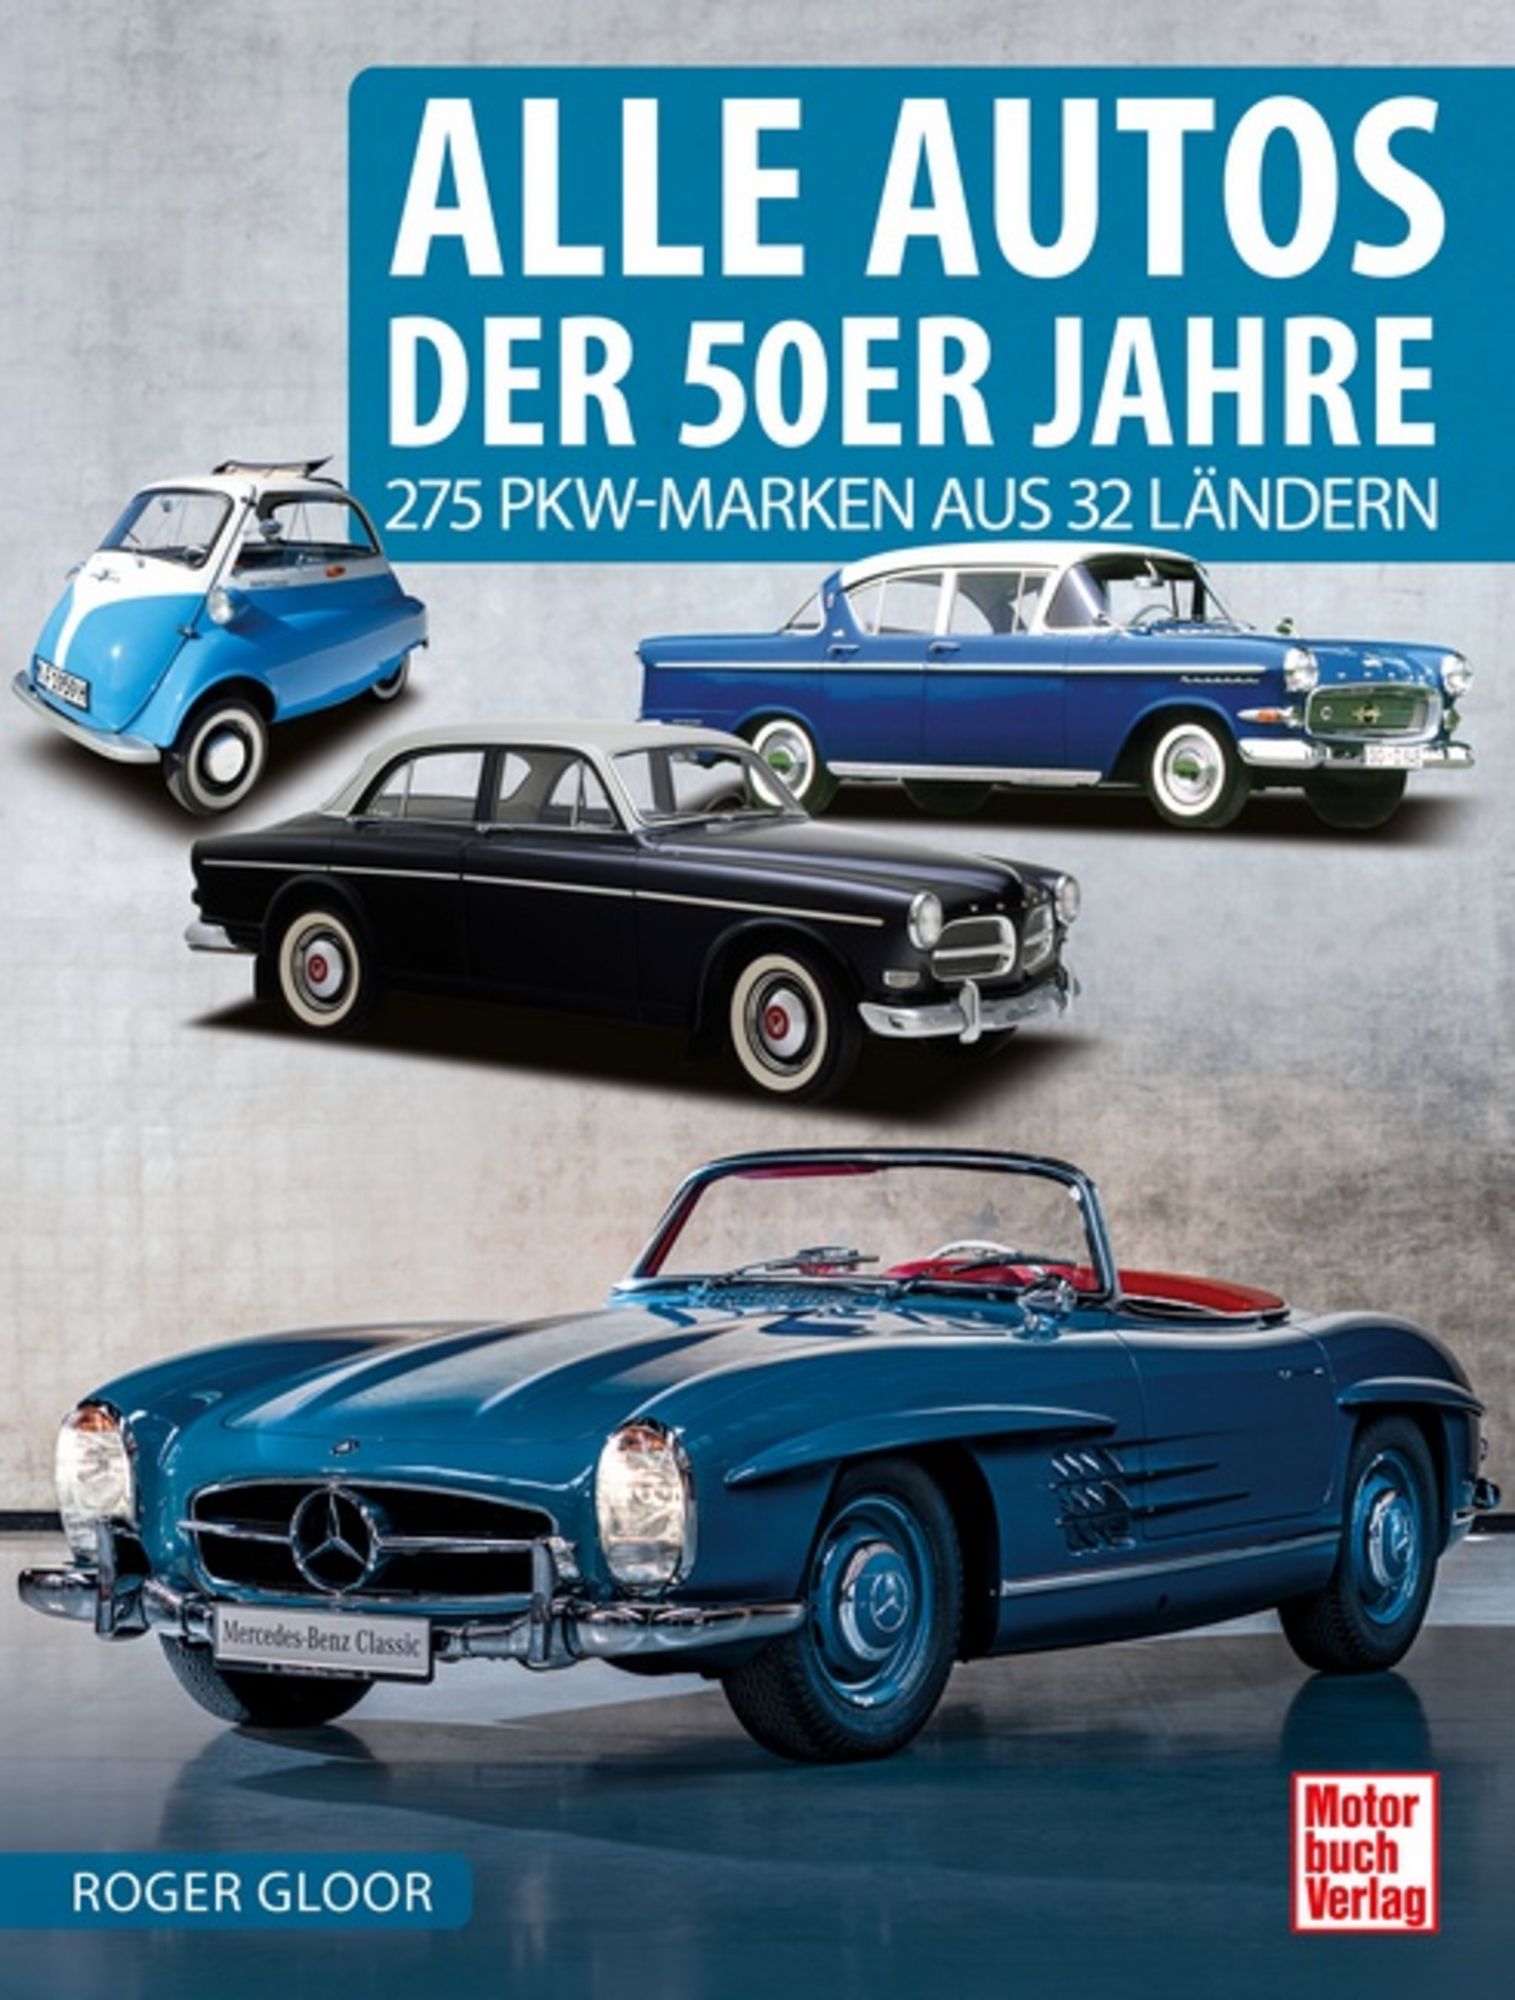 Alle Autos der 50er Jahre' von 'Roger Gloor' - Buch - '978-3-613-04430-2